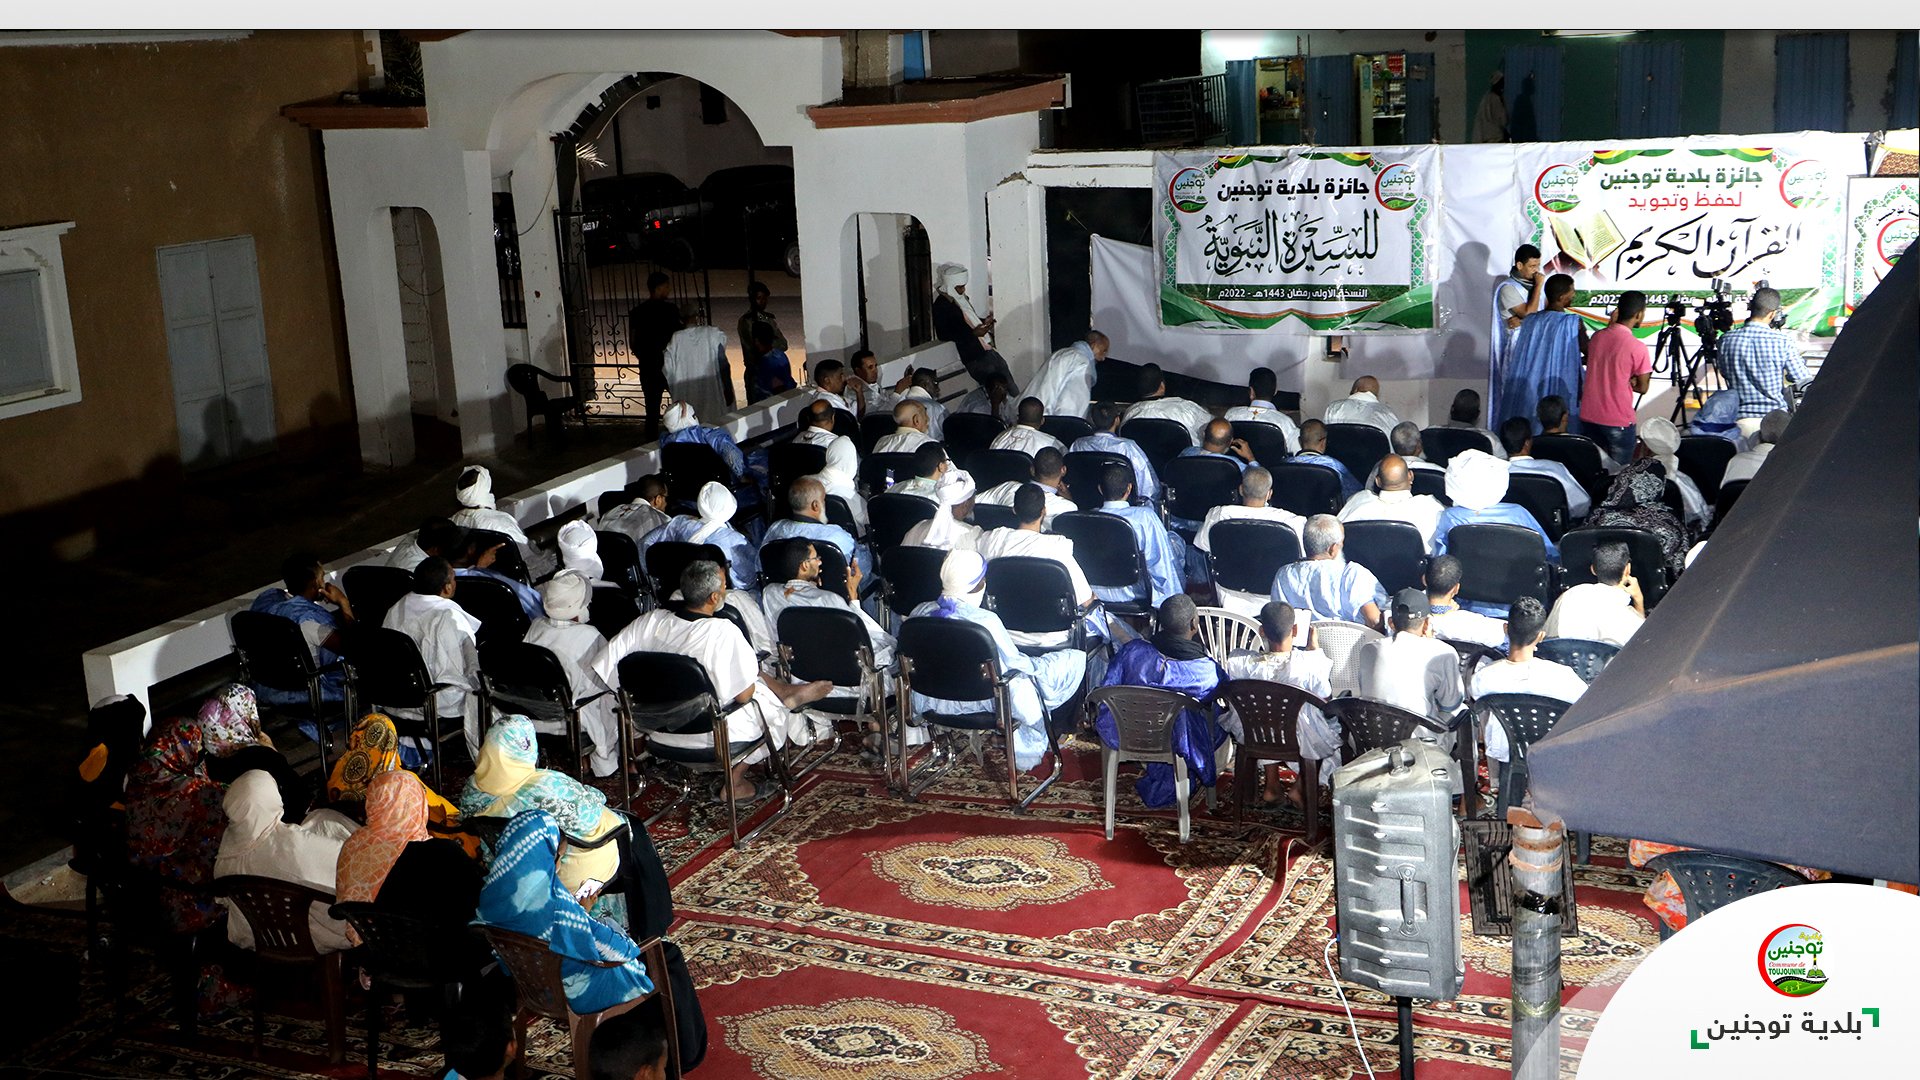 بلدية توجنين تكرم الفائزين في النسخة الأولى من مسابقتها الرمضانية في القرآن الكريم والسيرة النبوية